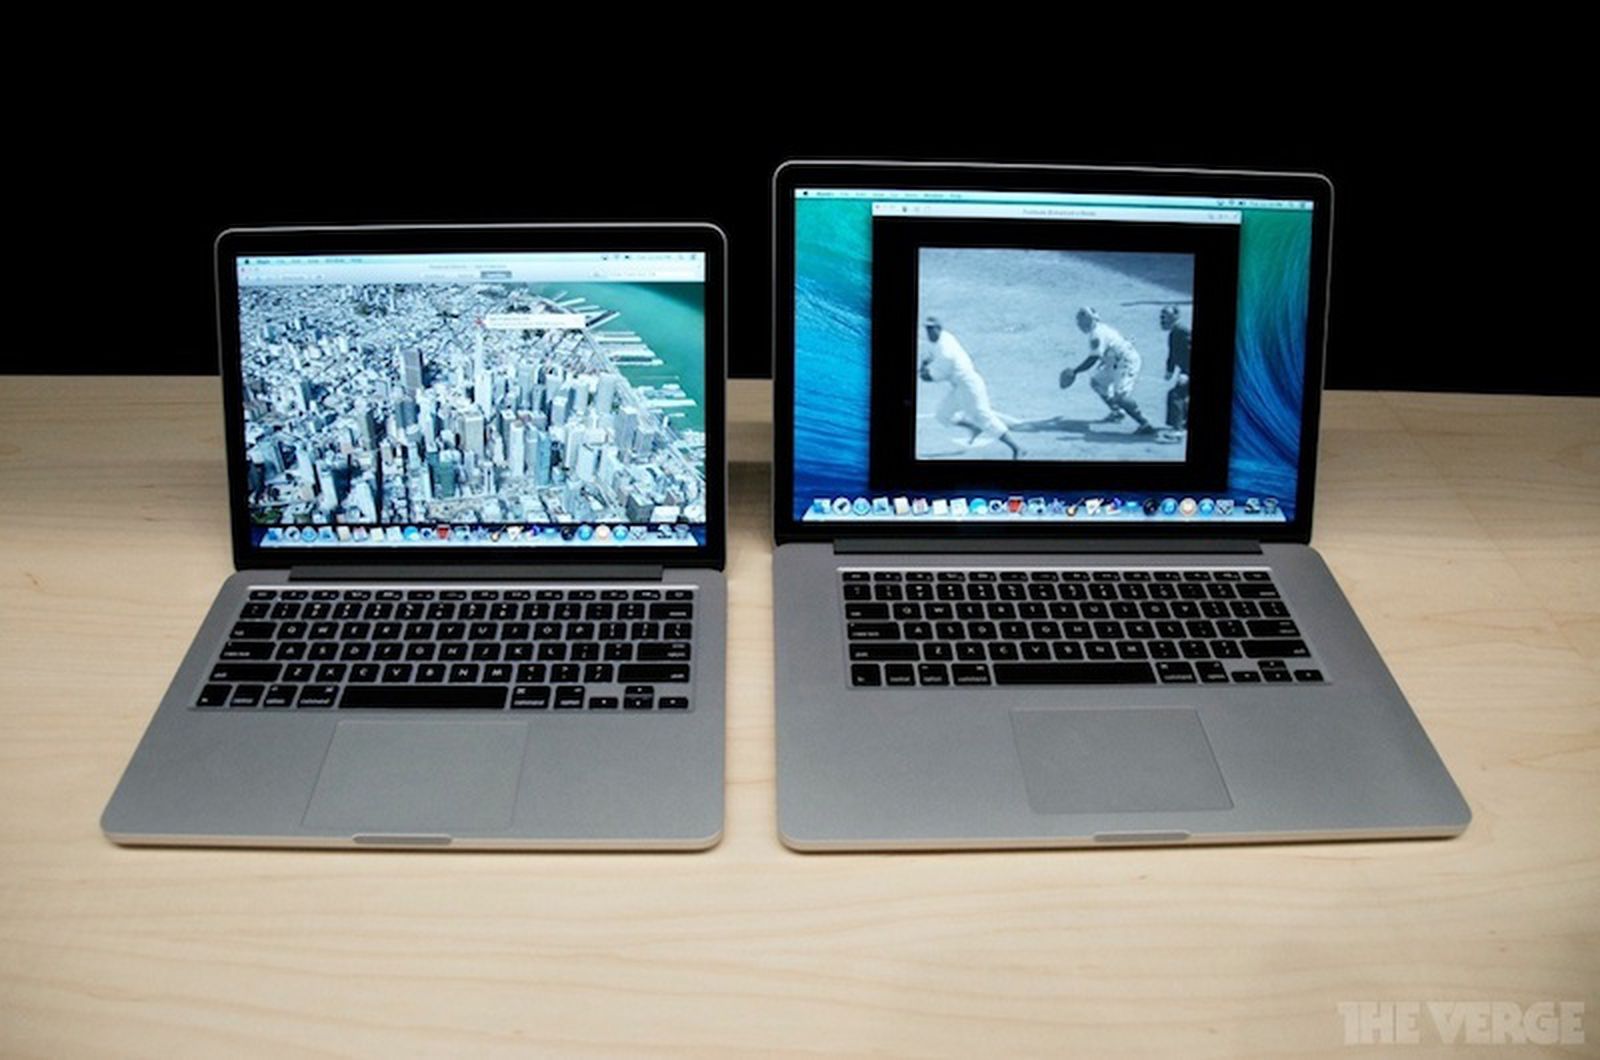 Диагональ ноутбука 17.3. Макбук 13 и 15 дюймов. Mac Pro 2012 Retina 13 дюймов. MACBOOK Pro 13 vs 15. MACBOOK Pro 17.3.